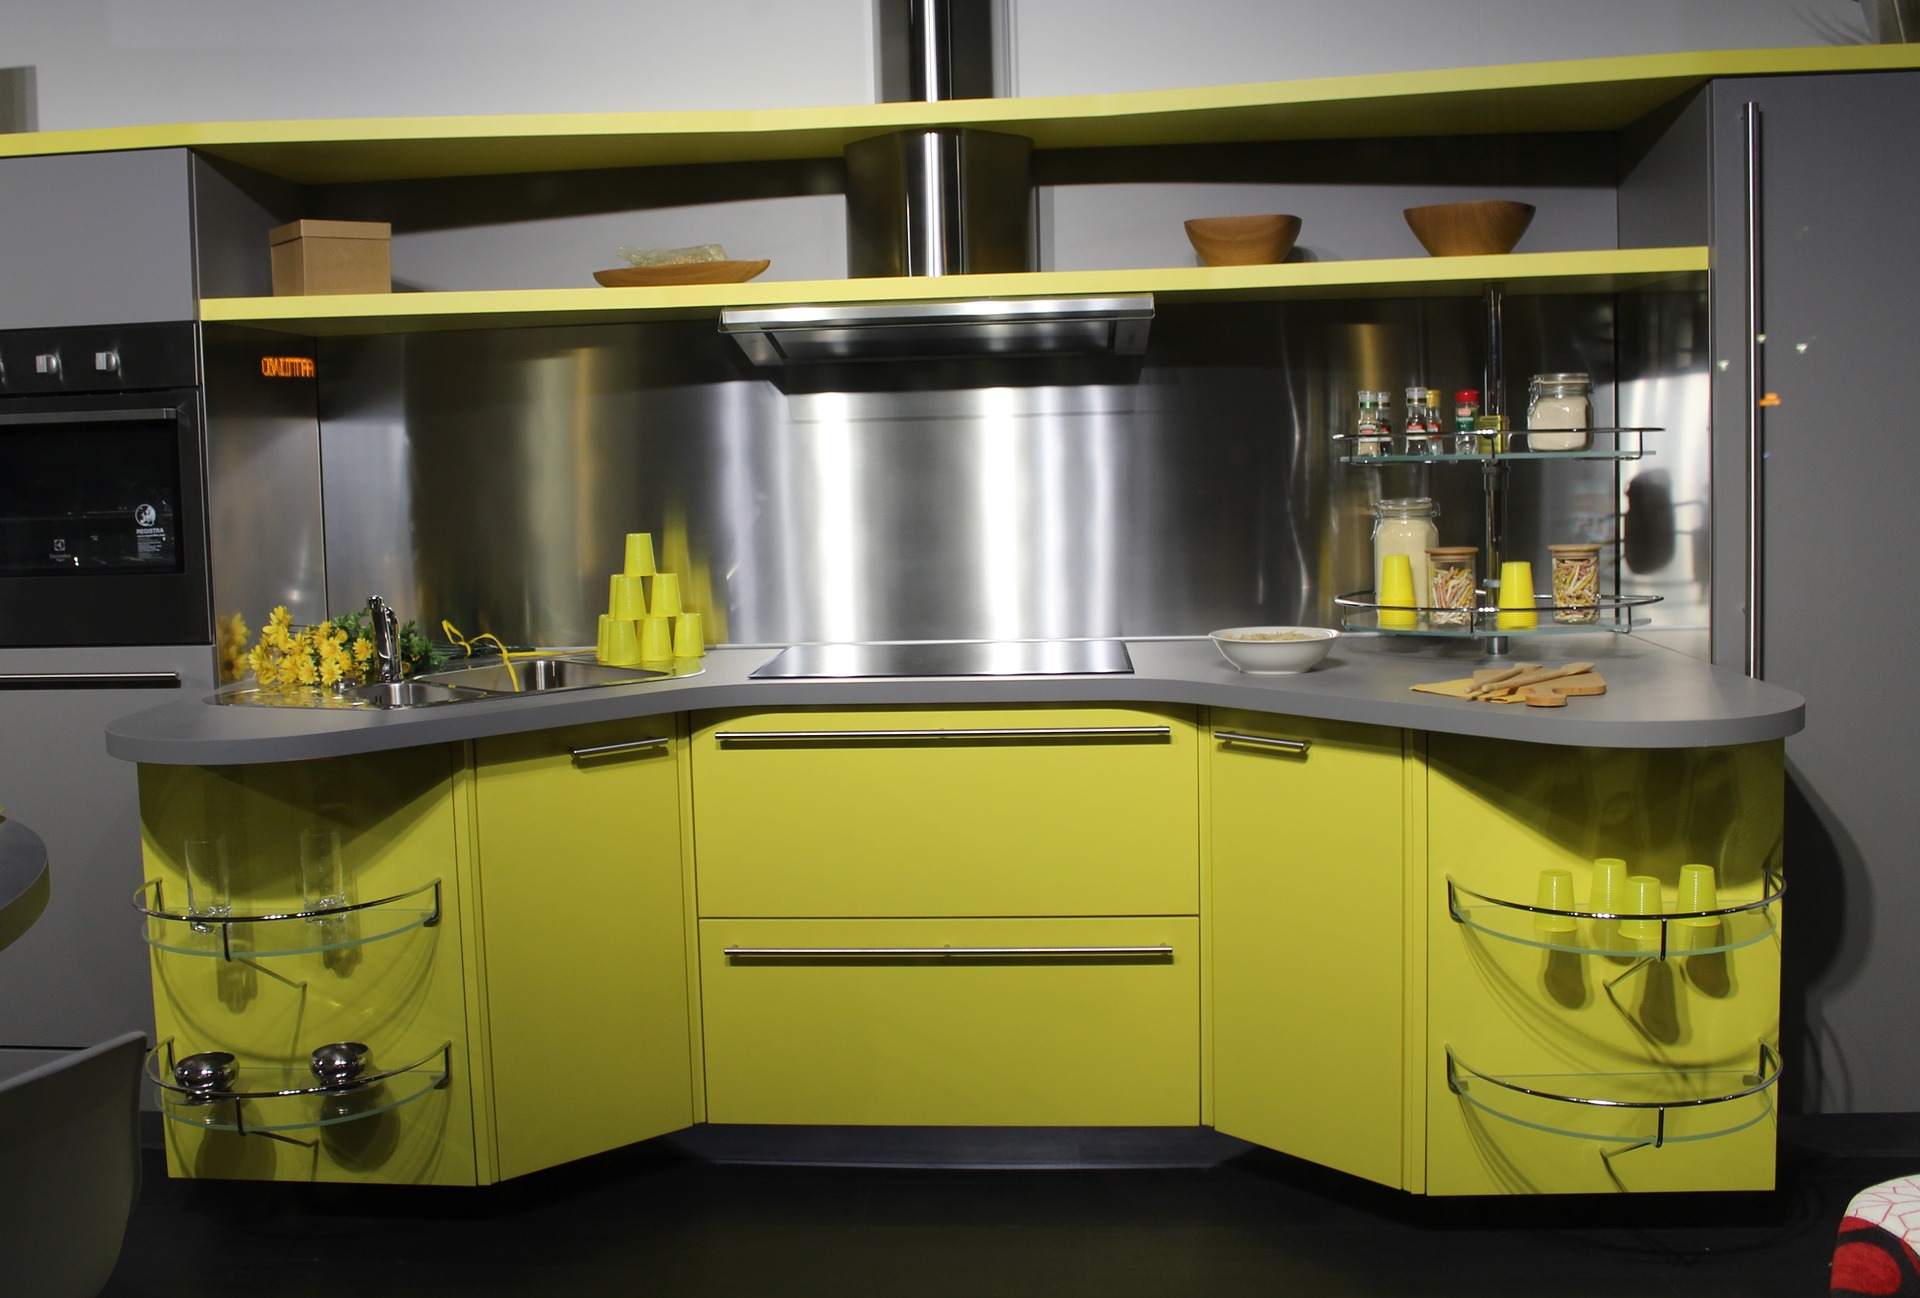 Купить желтую кухню. Желто серая кухня. Серо желтая кухня. Кухня в желто серых тонах. Желто черная кухня.